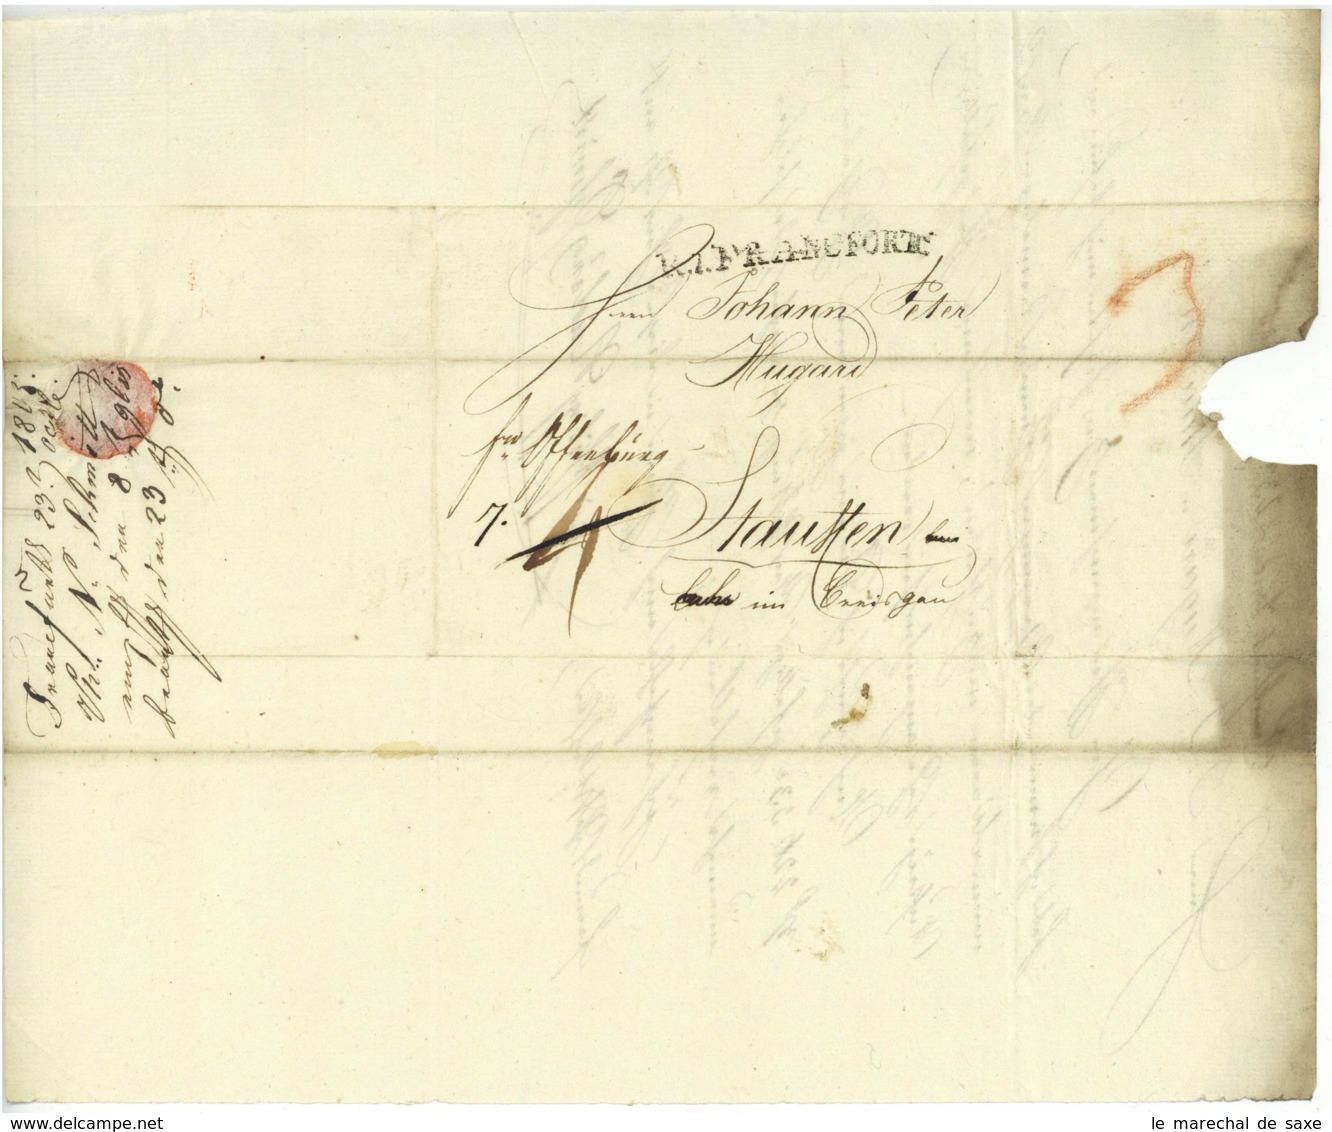 Philipp Nicolas SCHMIDT (1750-1823) Frankfurt Am Main Handelsmann Bankier Abgeordneter 1805 Staufen Hugard - Documentos Históricos